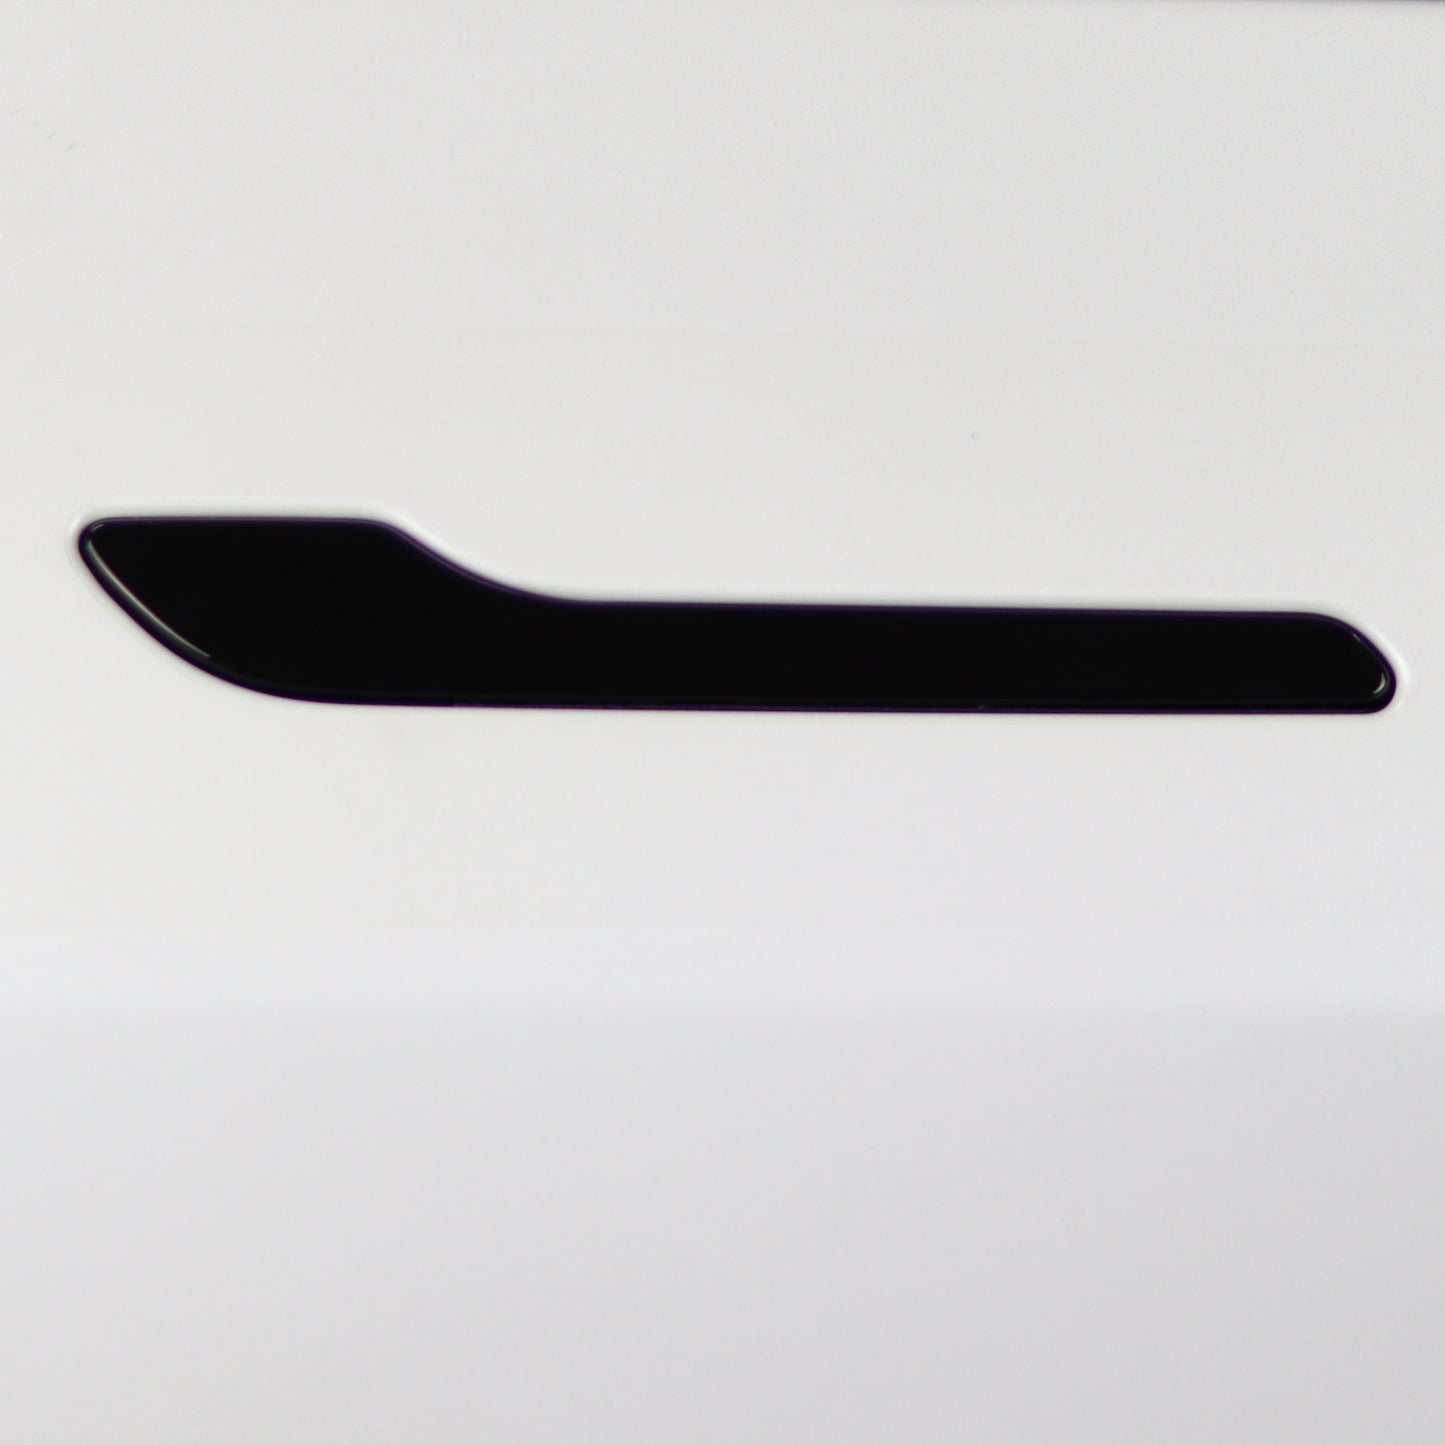 Door Handles Vinyl Cover for Tesla Model 3 / Model Y